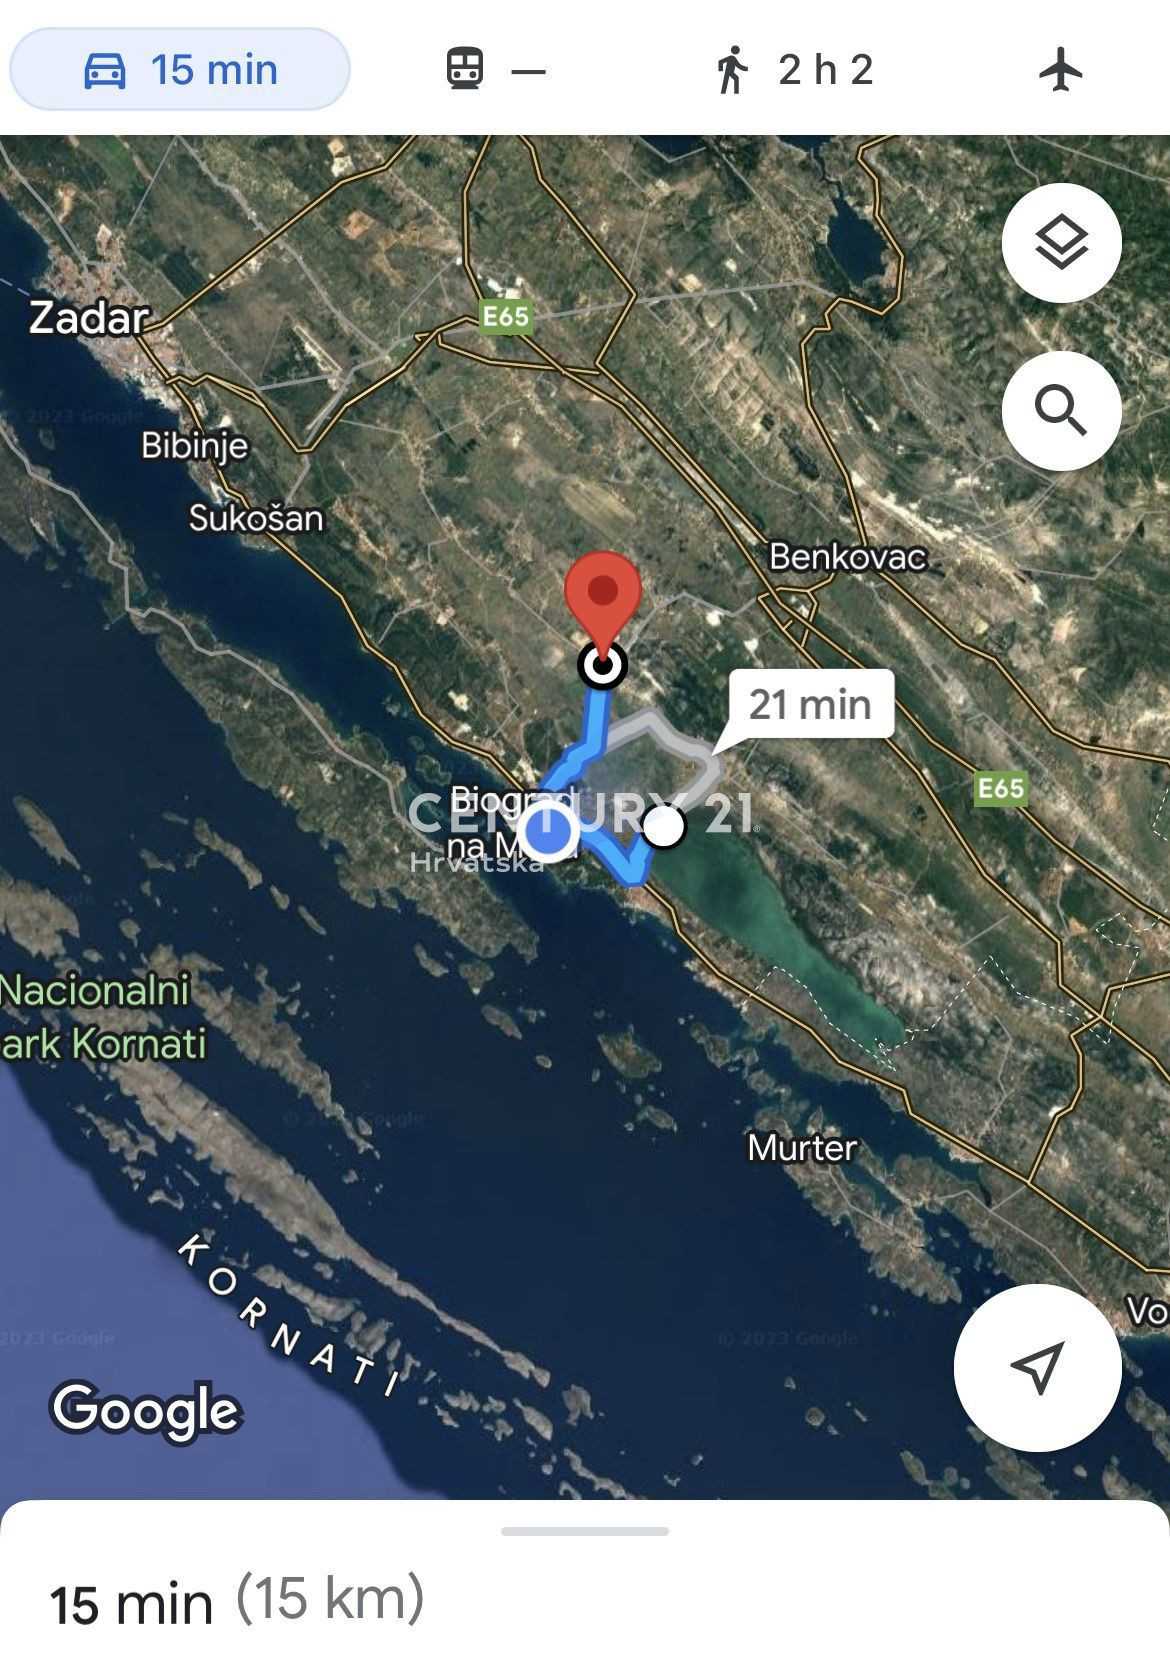 Γη σε Polača, Zadar County 11613978